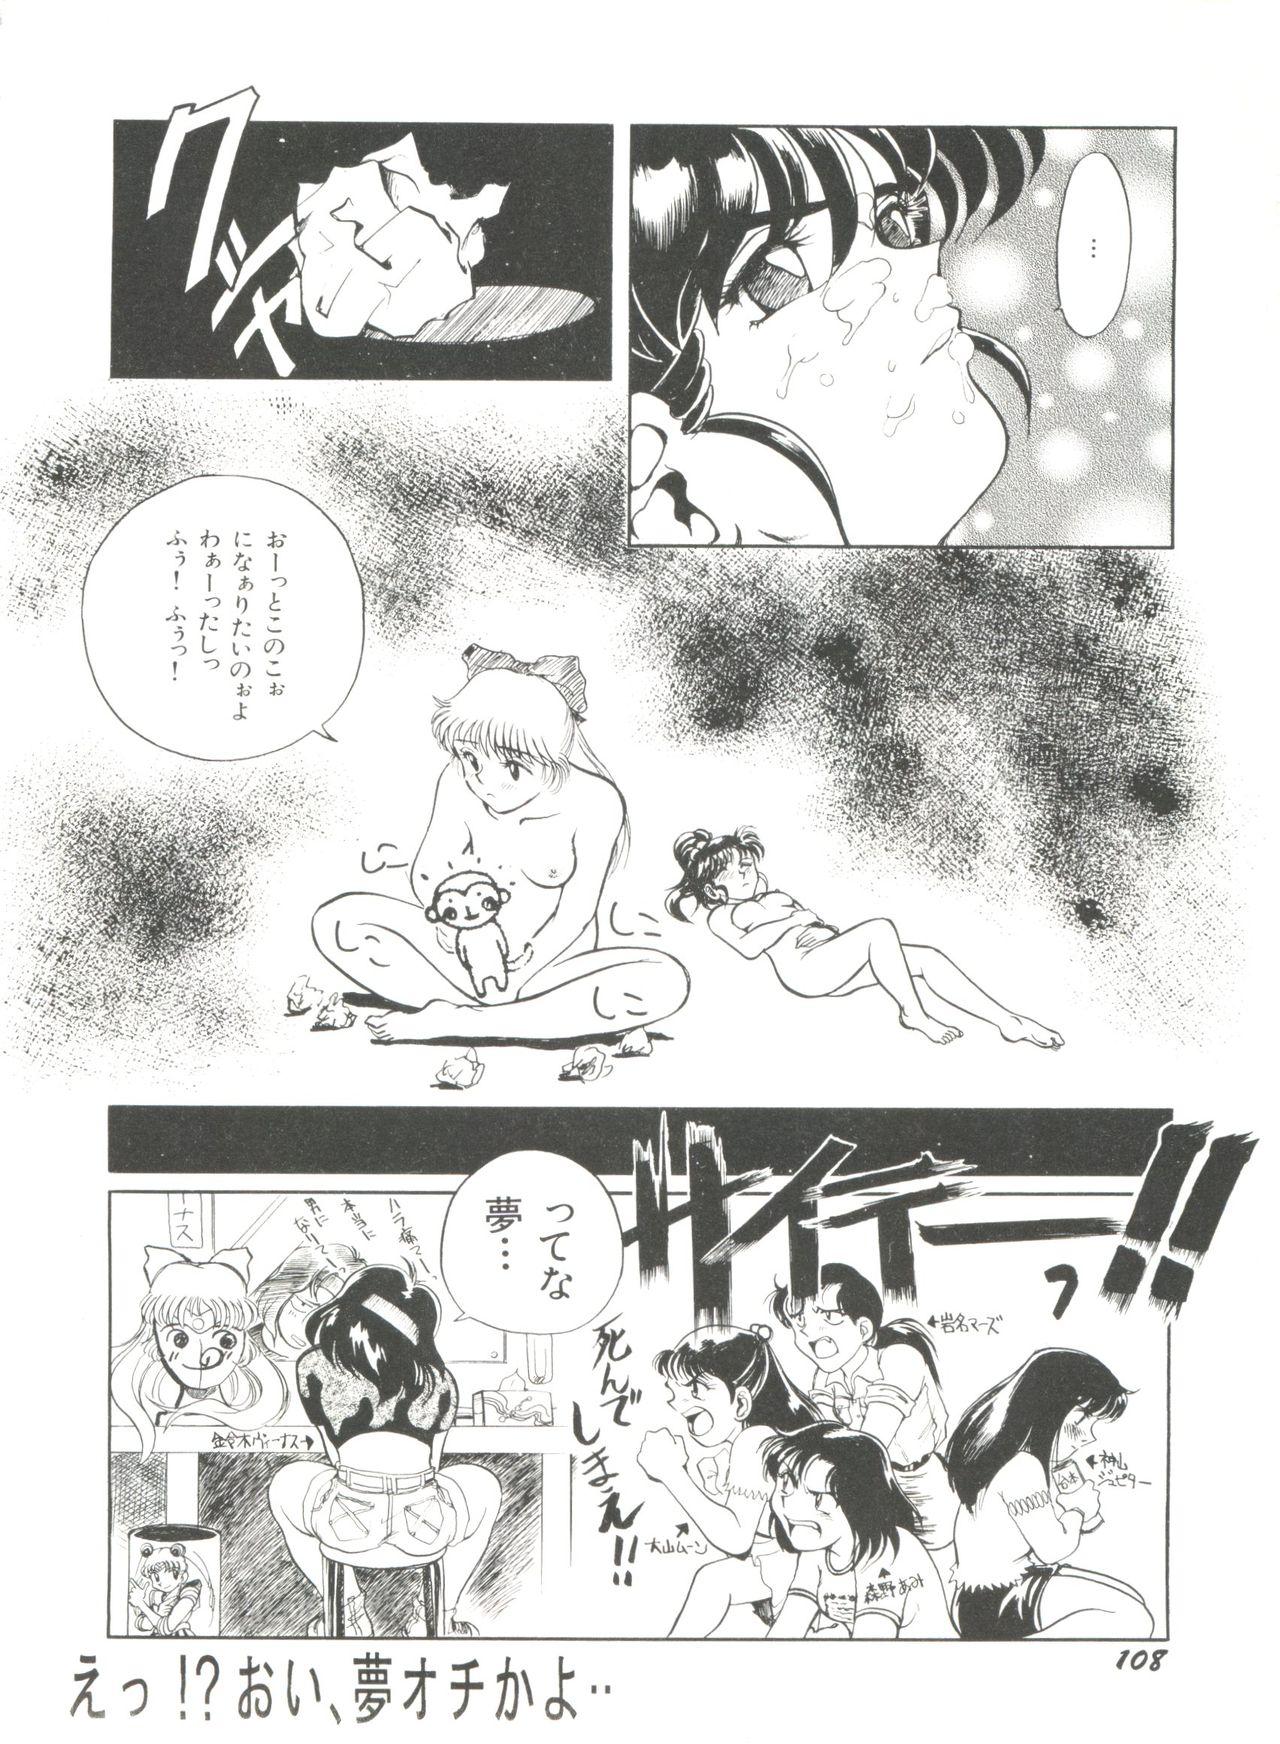 Bishoujo Doujinshi Anthology 18 - Moon Paradise 11 Tsuki no Rakuen 109